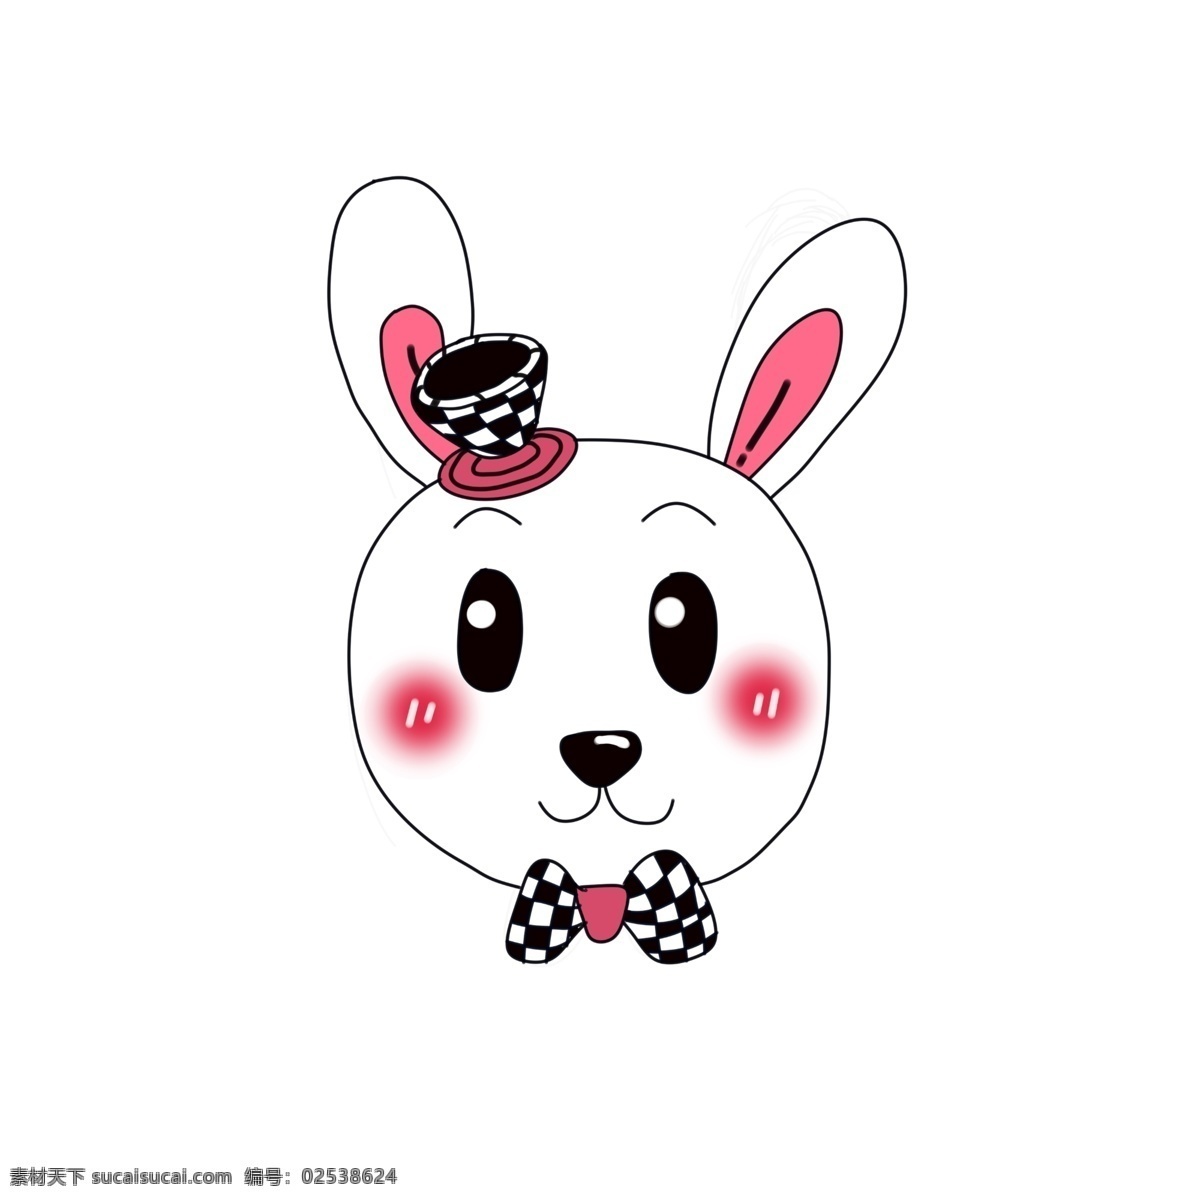 手绘兔 可爱兔子 卡通兔子 卡通小白兔 可爱小白兔 矢量小白兔 口袋兔子 矢量兔子 兔子矢量 卡通矢量兔子 口袋卡通兔子 兔子花 蝴蝶结兔子 卡通 矢量 兔子 小白兔 兔兔 可爱 卡通设计